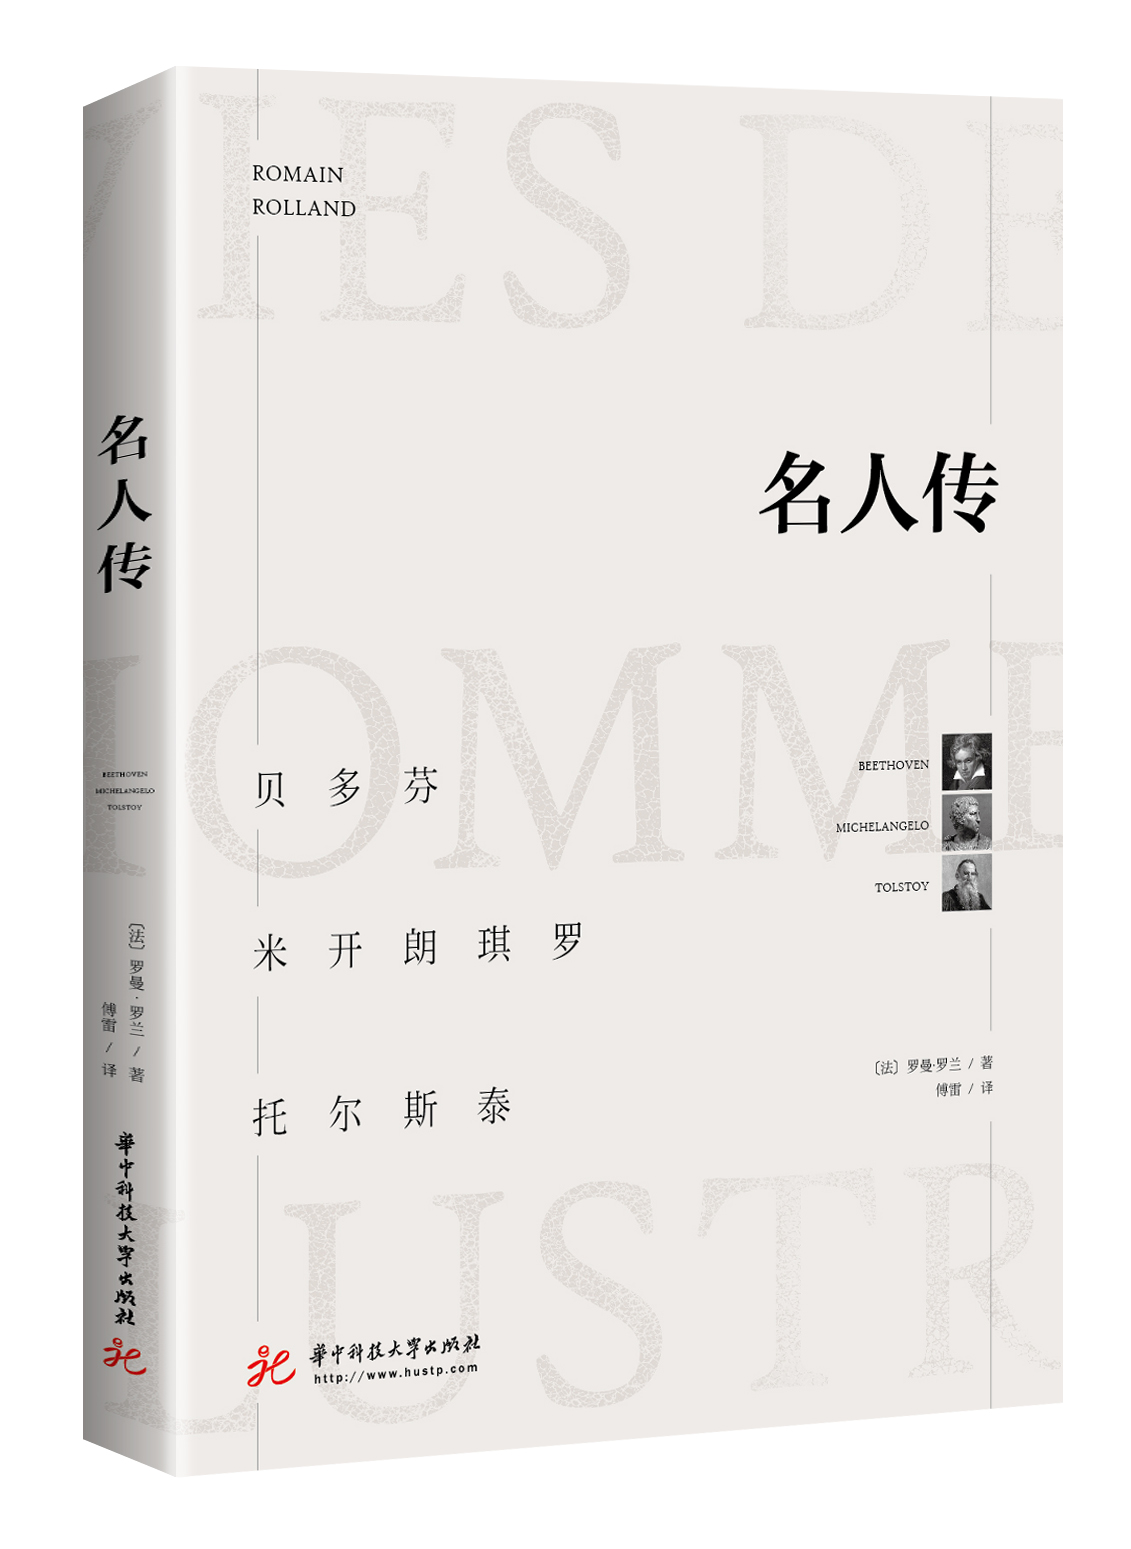 名人傳(2018年華中科技大學出版社出版版本)